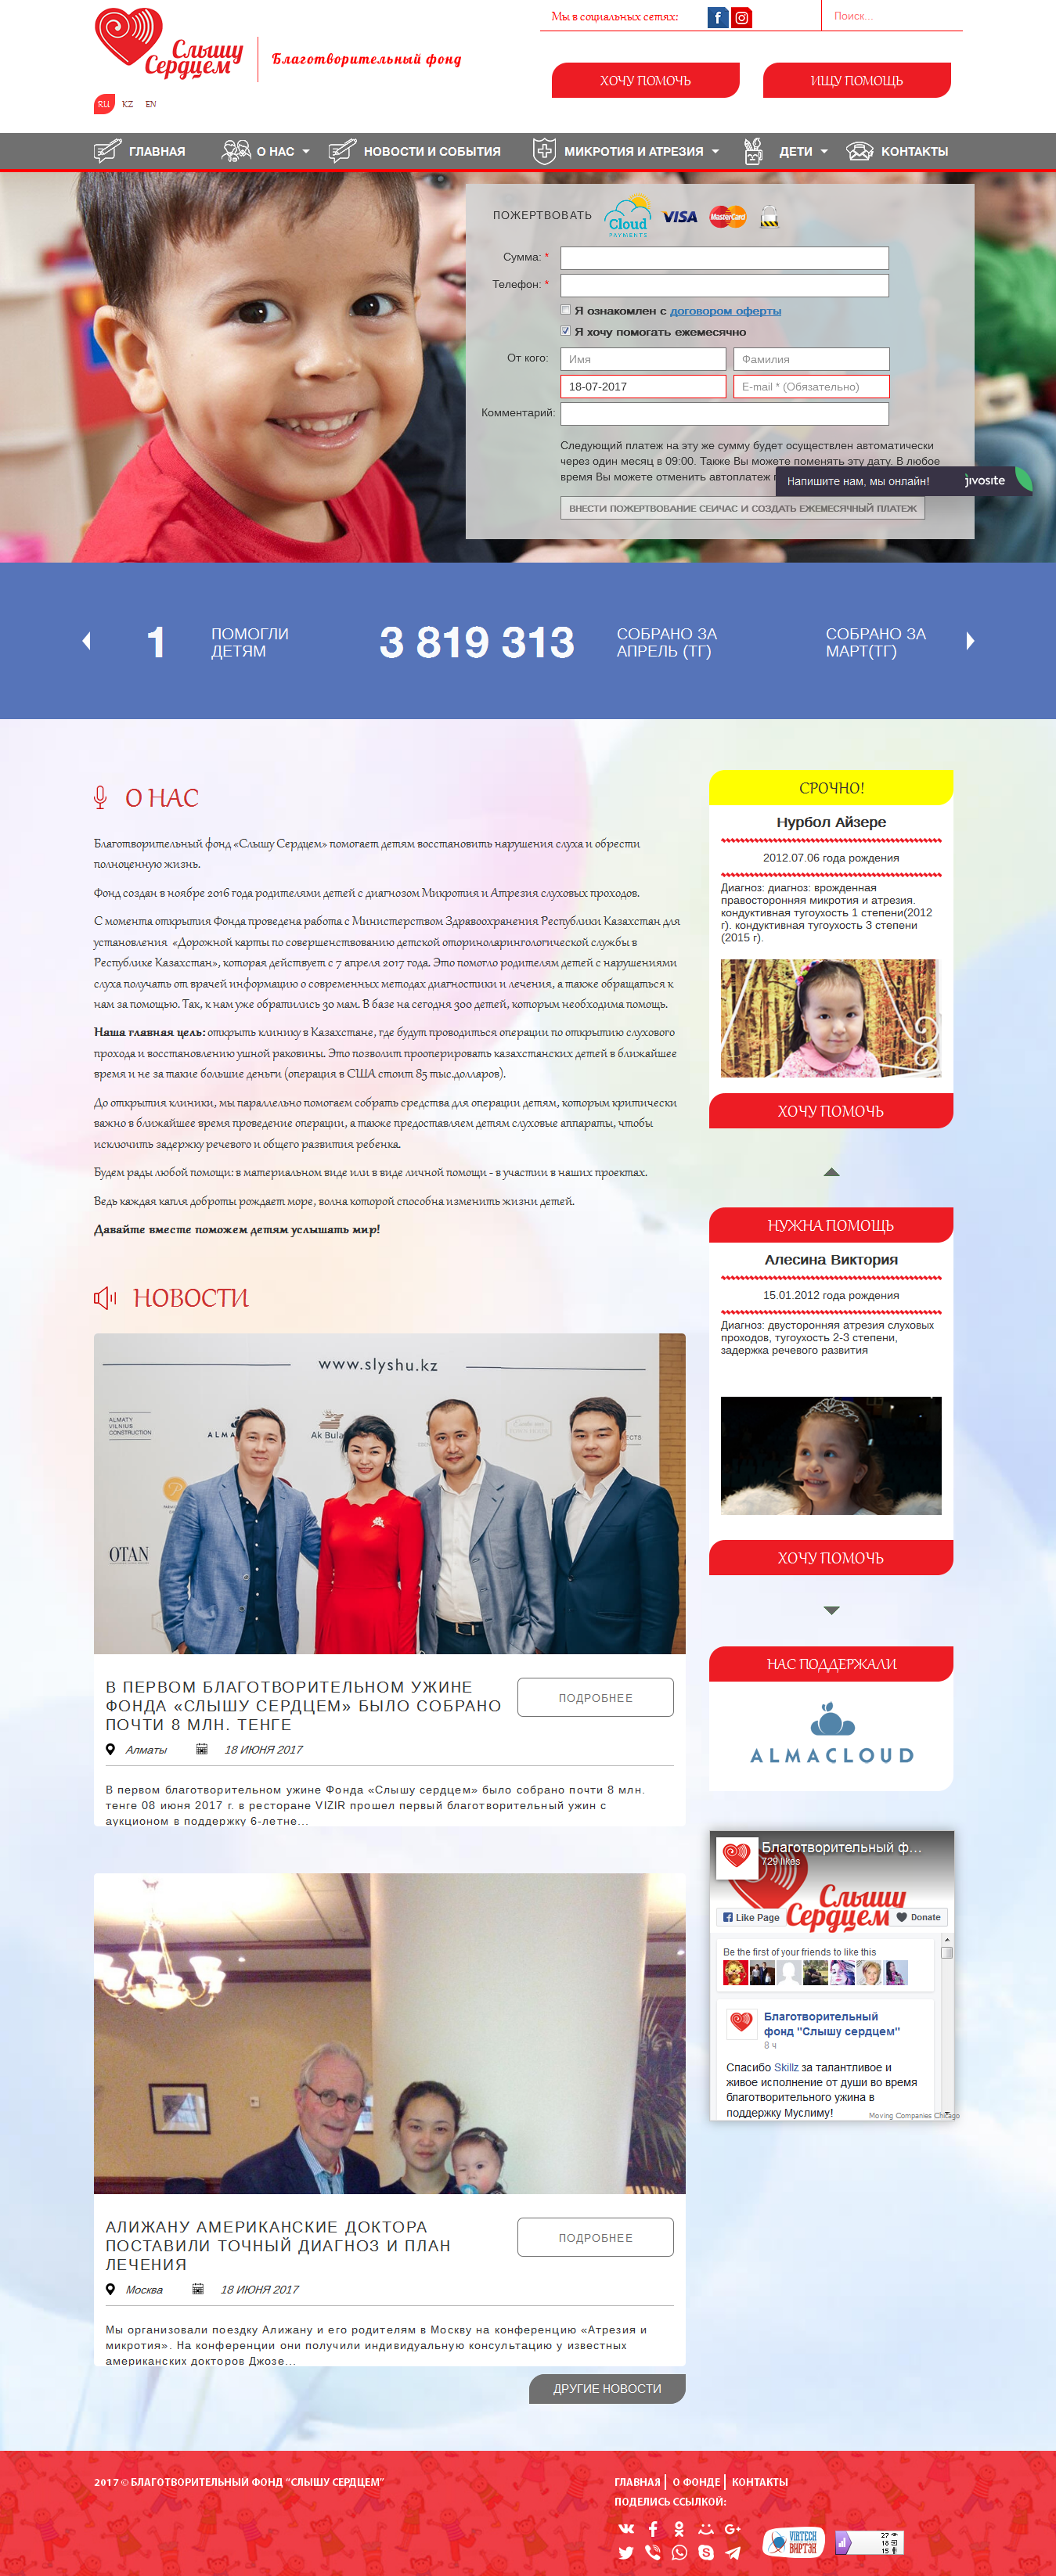 Создание сайта для благотворительного фонда Слышу сердцем (Казахстан) - https://slyshu.kz/ru/